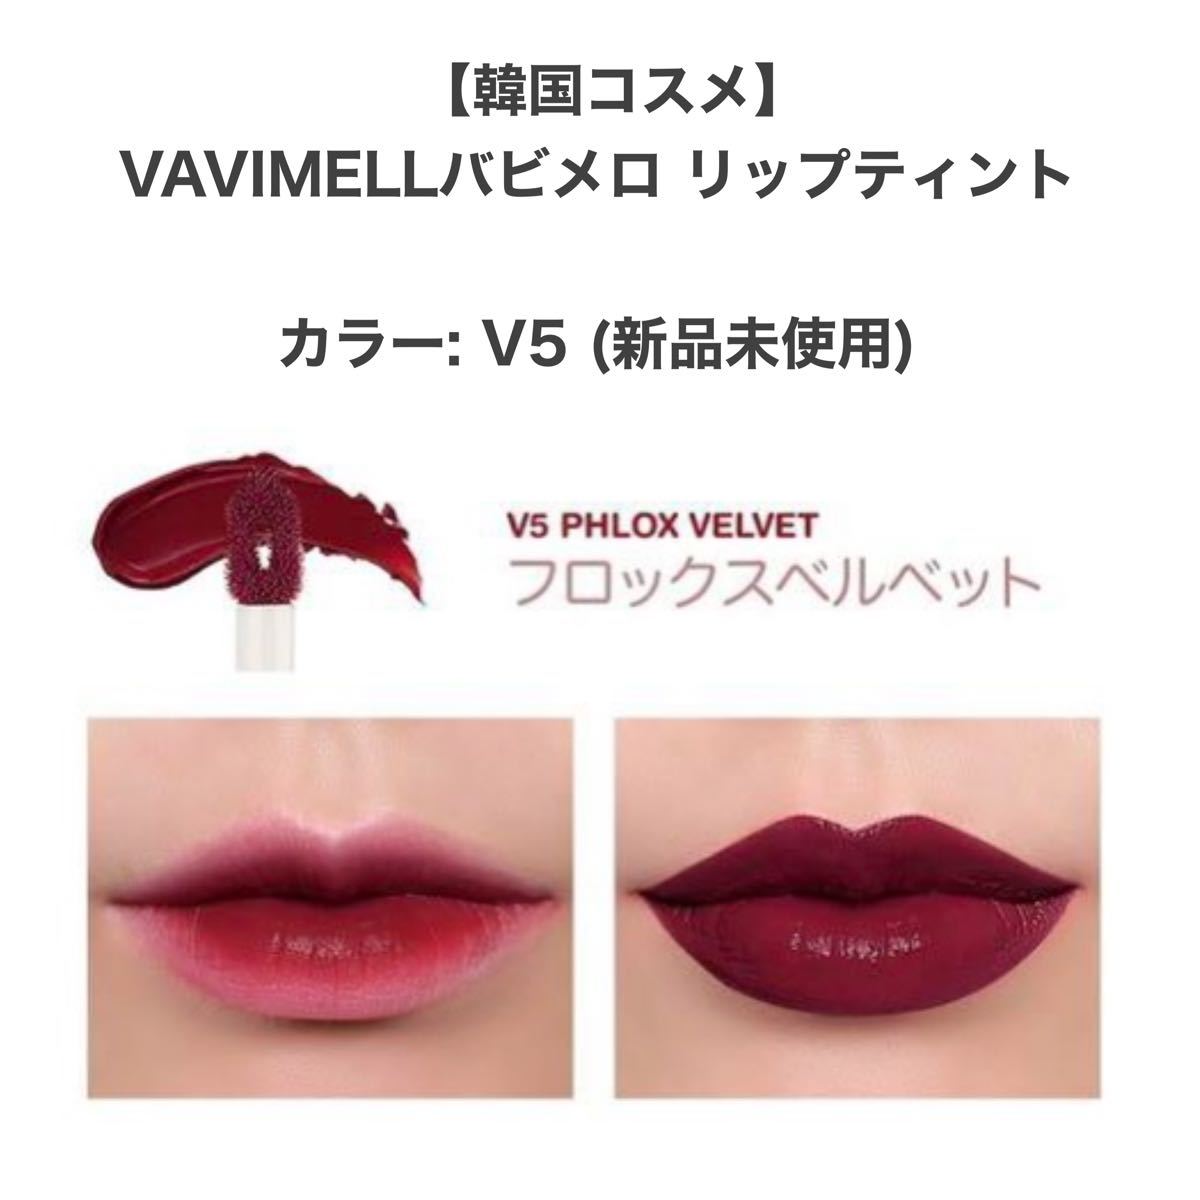 【韓国コスメ】新品 VAVIMELLO バビメロ リップティント V5番